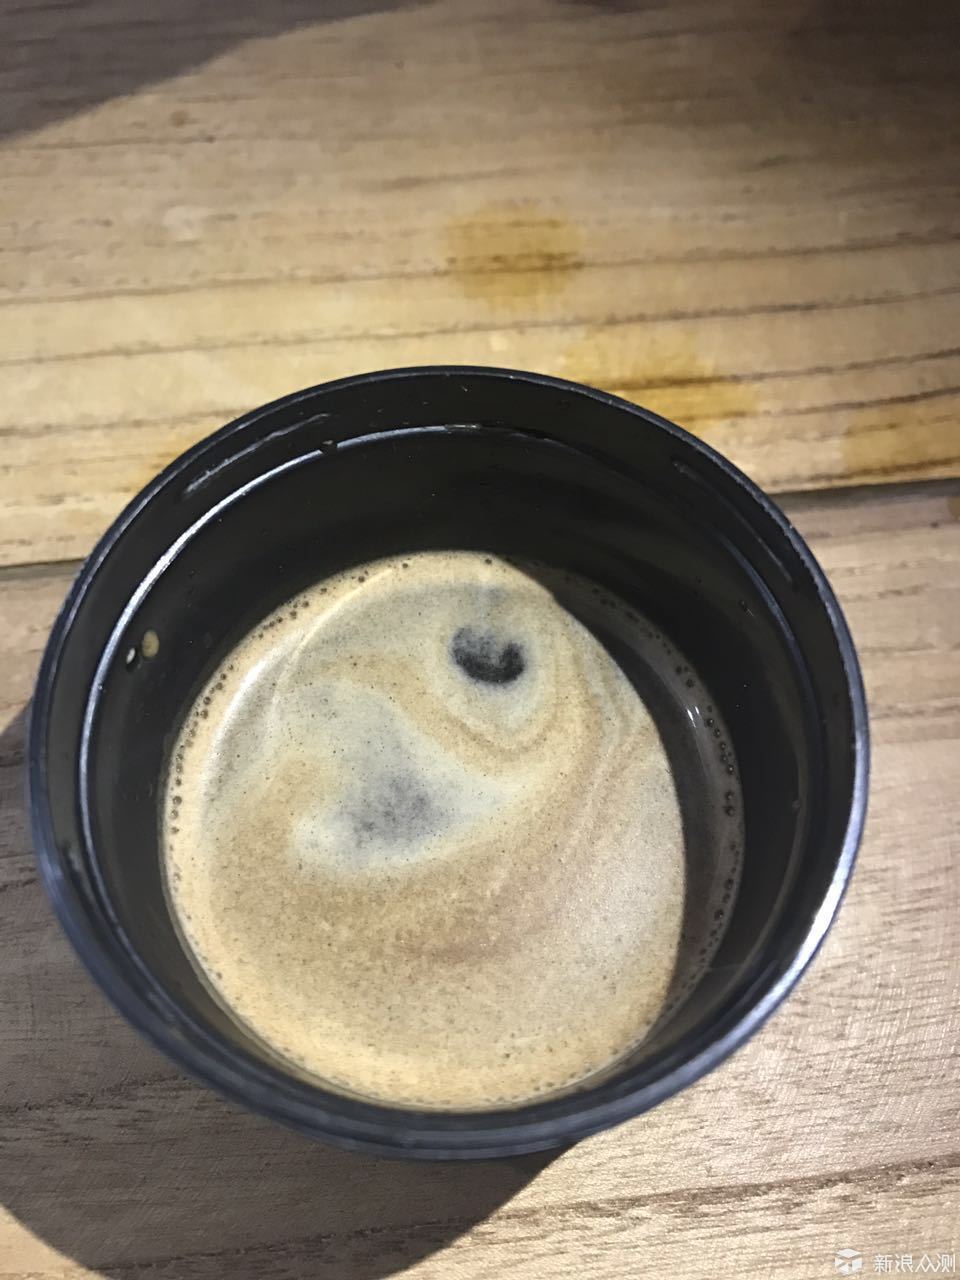 户外多色彩 minipresso添滋味 户外咖啡机测评_新浪众测